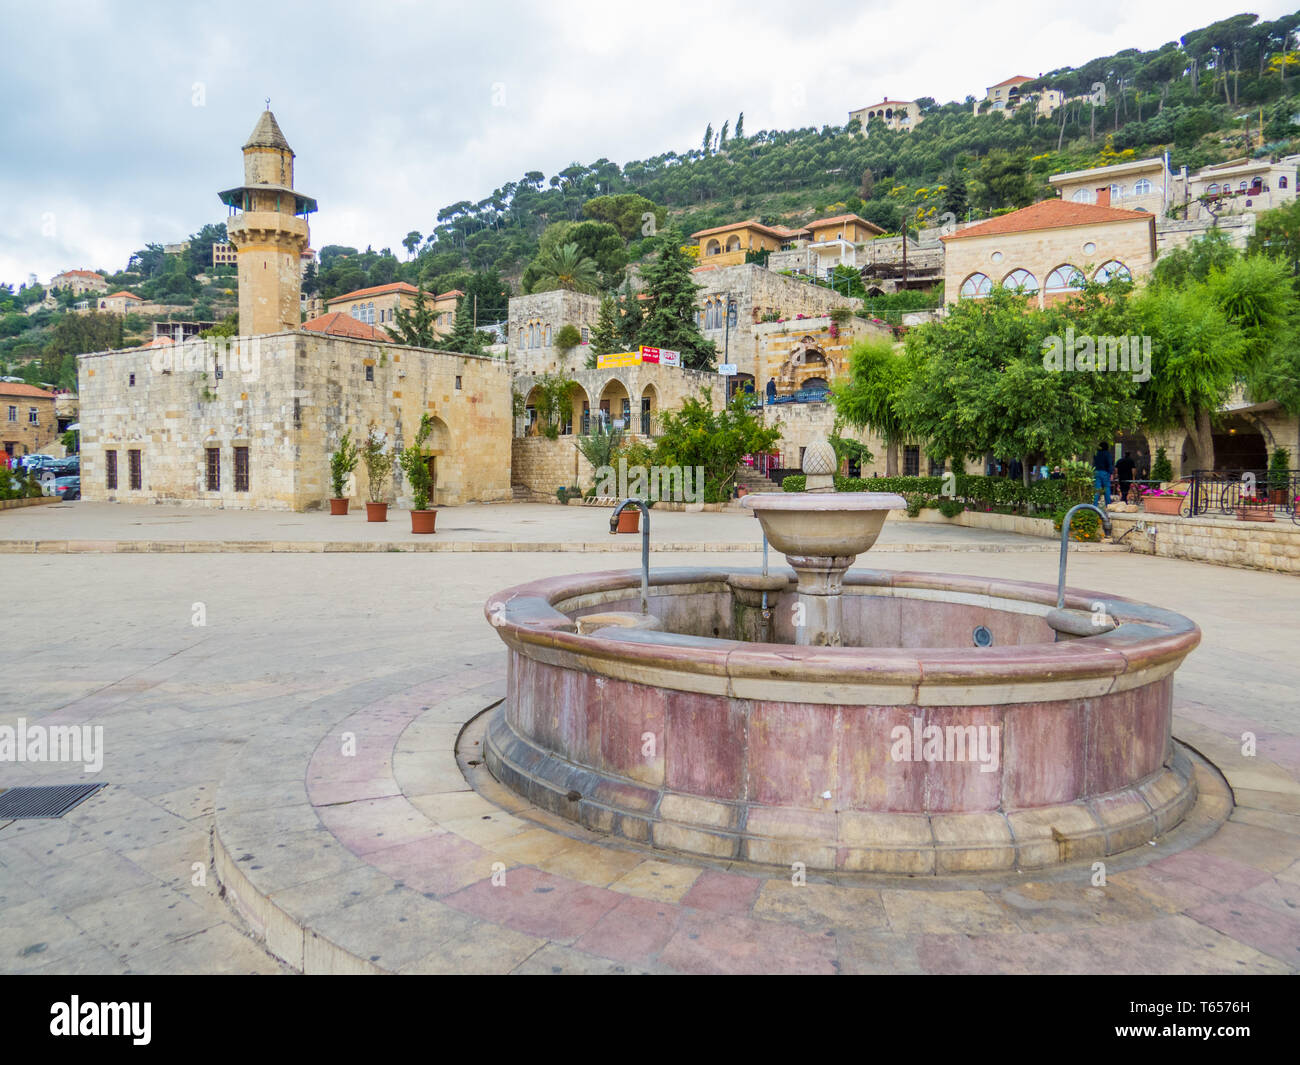 DEIR AL-QAMAR, Libanon - Mai 20, 2017: Blick auf die Elke II Palace und der Dorfplatz. Stockfoto